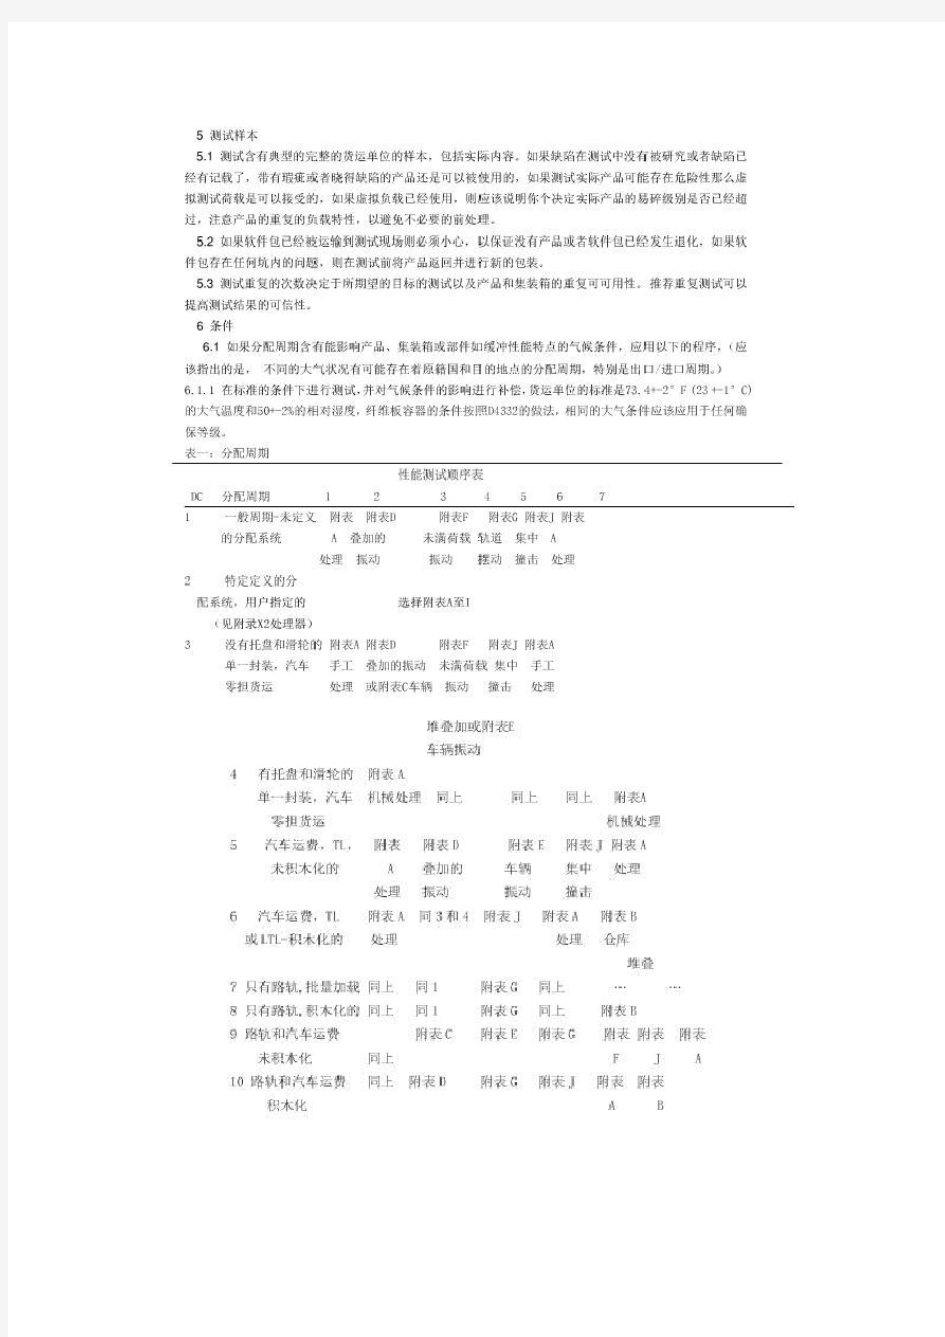 ASTMD4169中文版